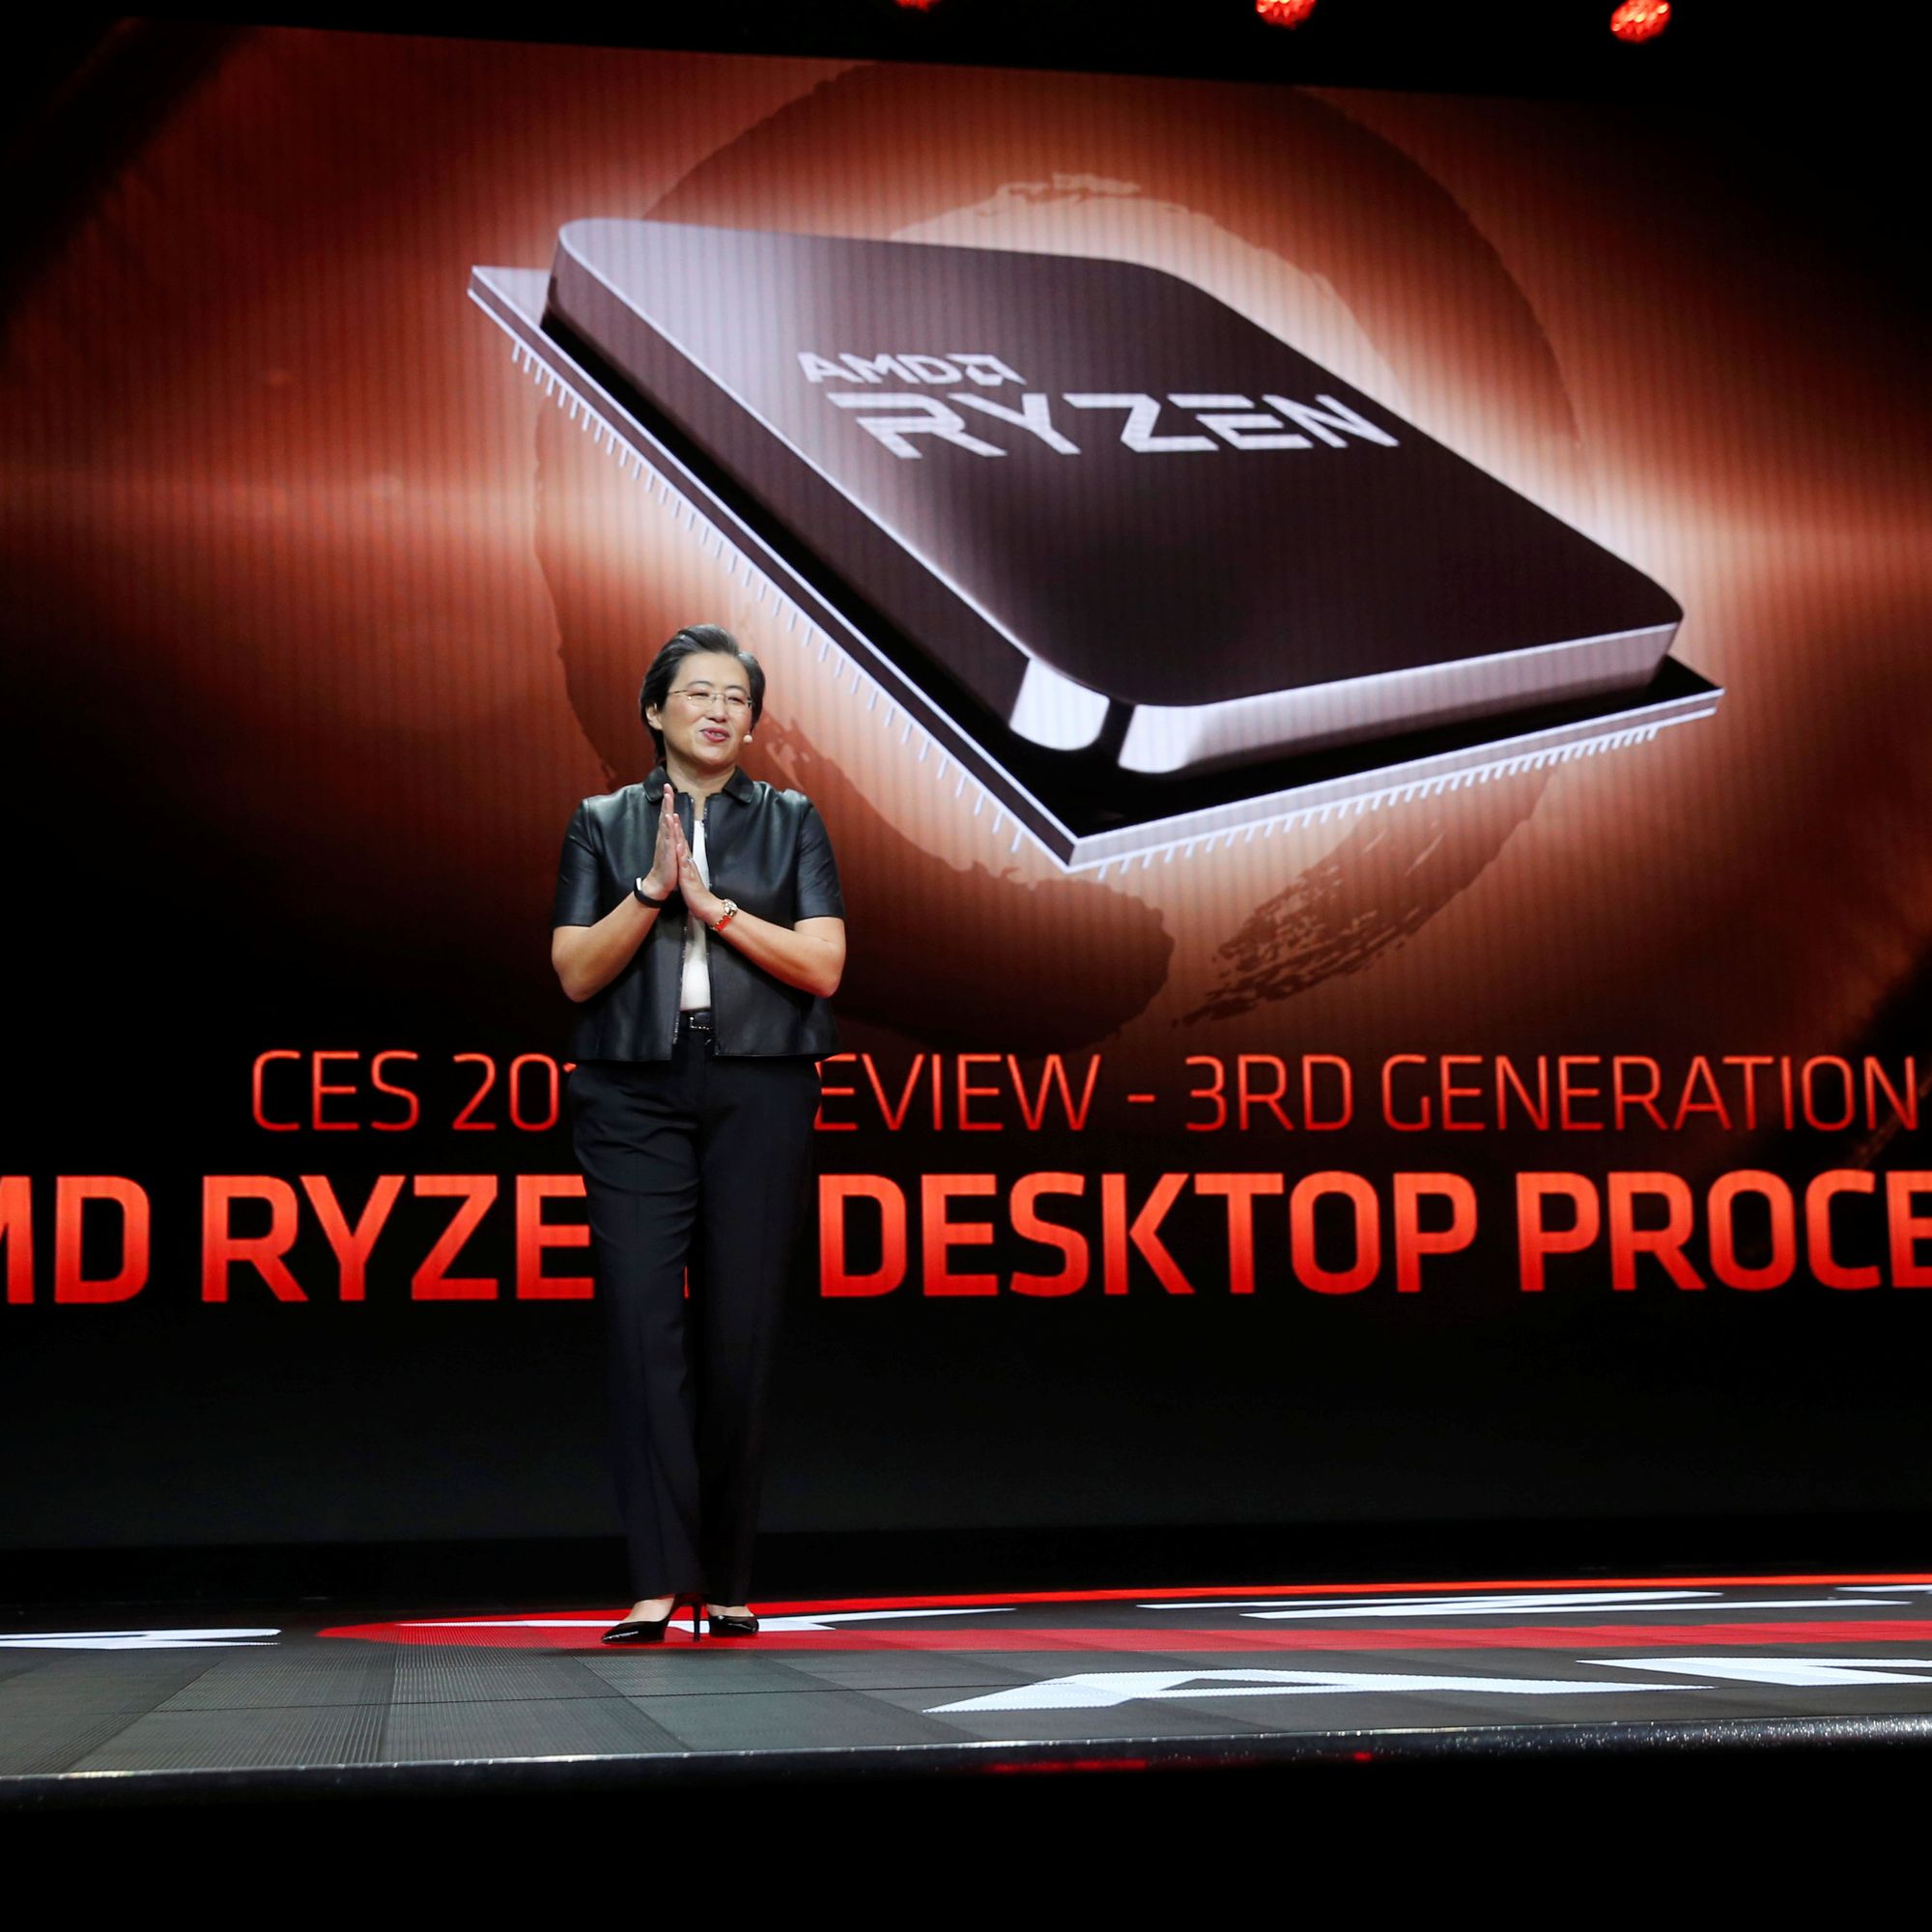 Første AMD Ryzen basert på 7 nanometer kommer i neste kvartal - Digi.no